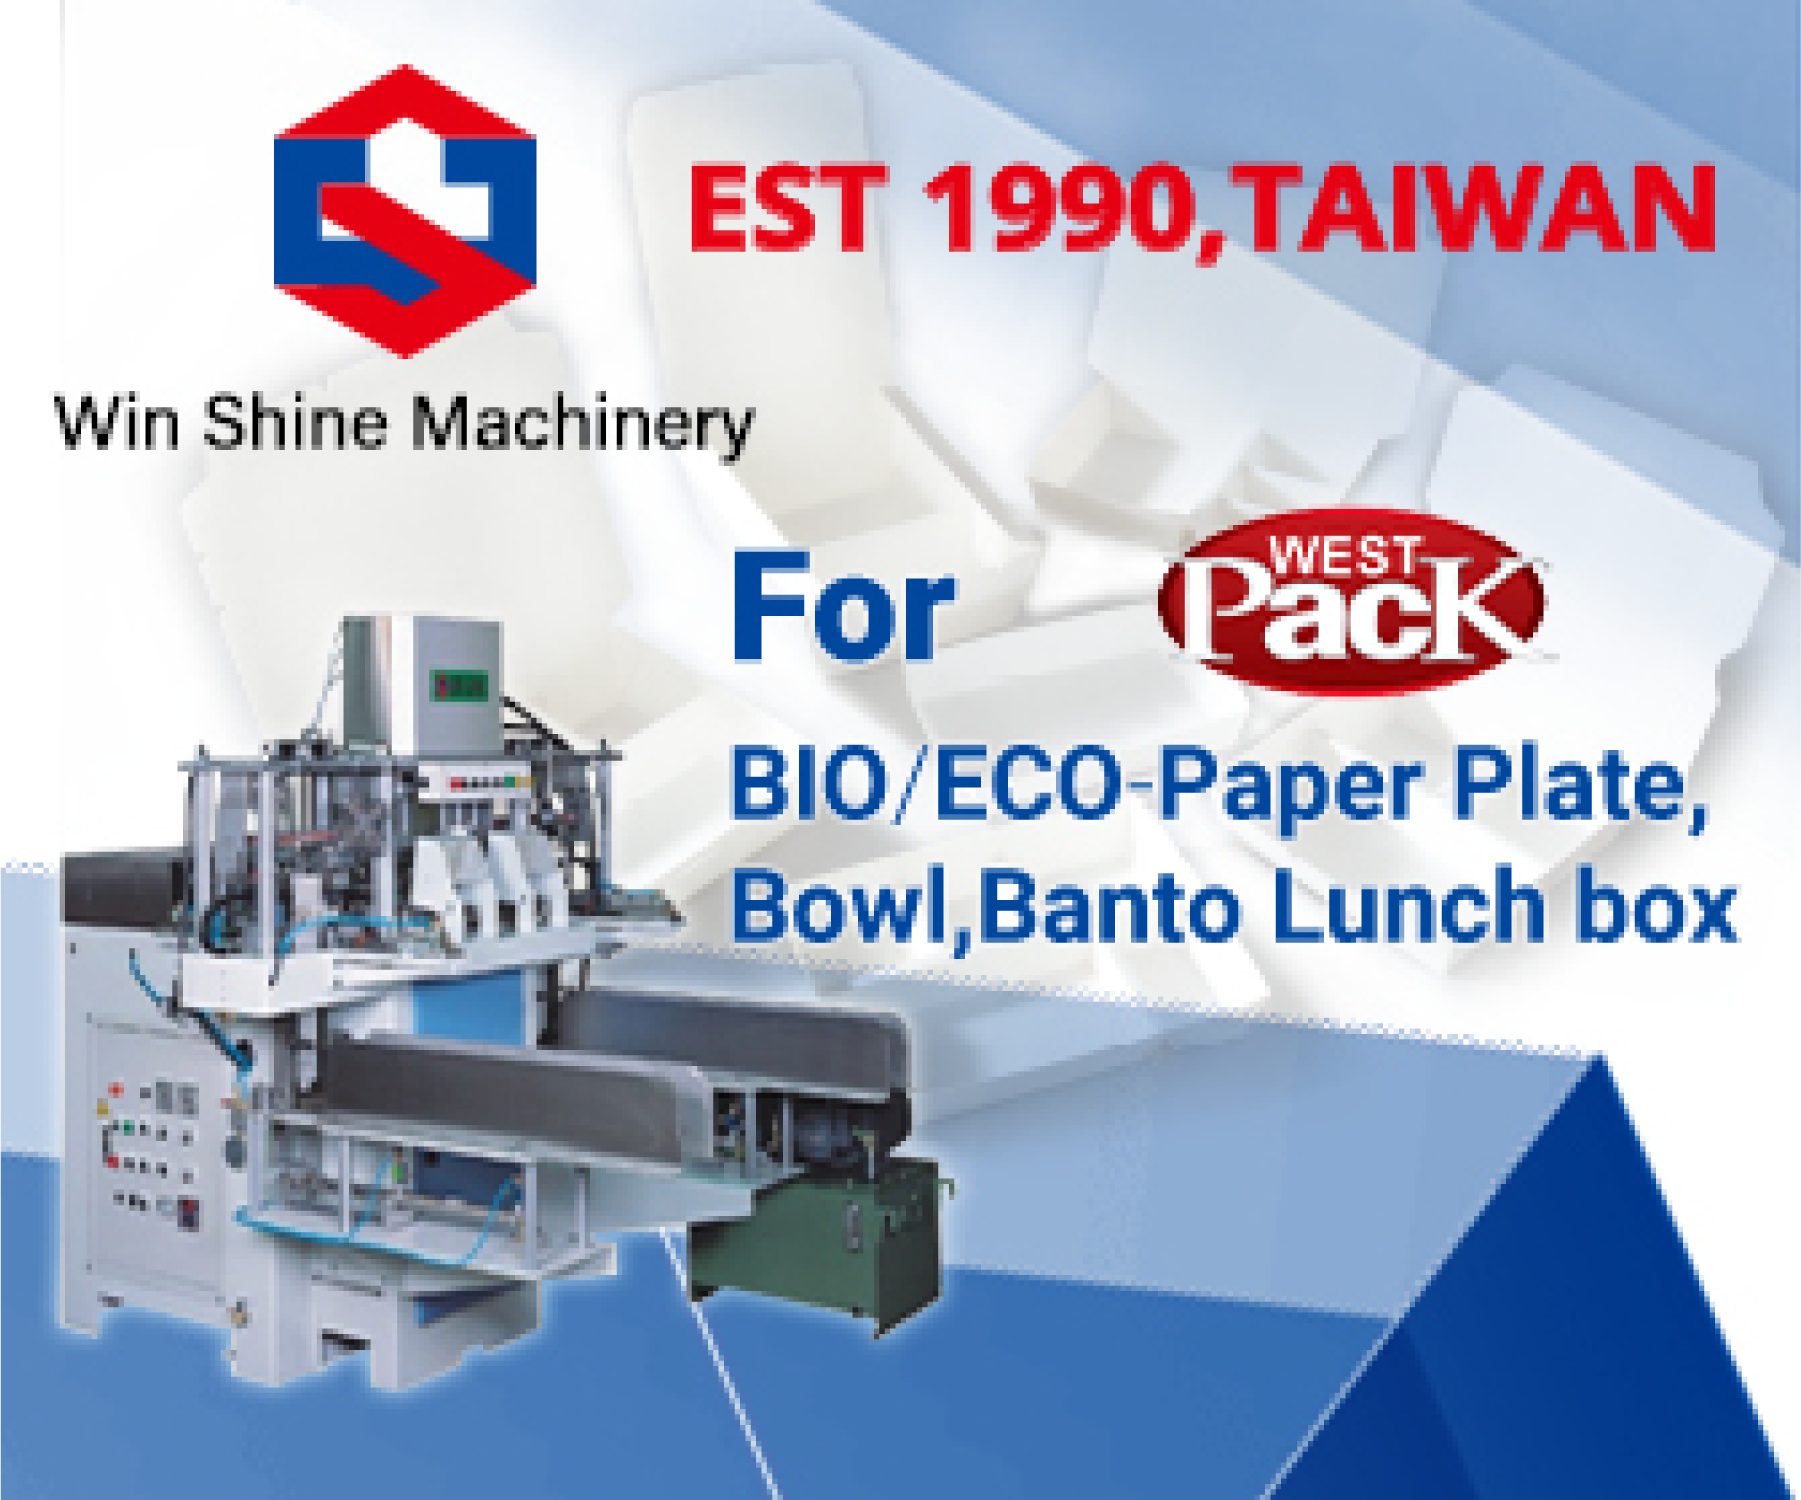 paper plate manufacturing machine